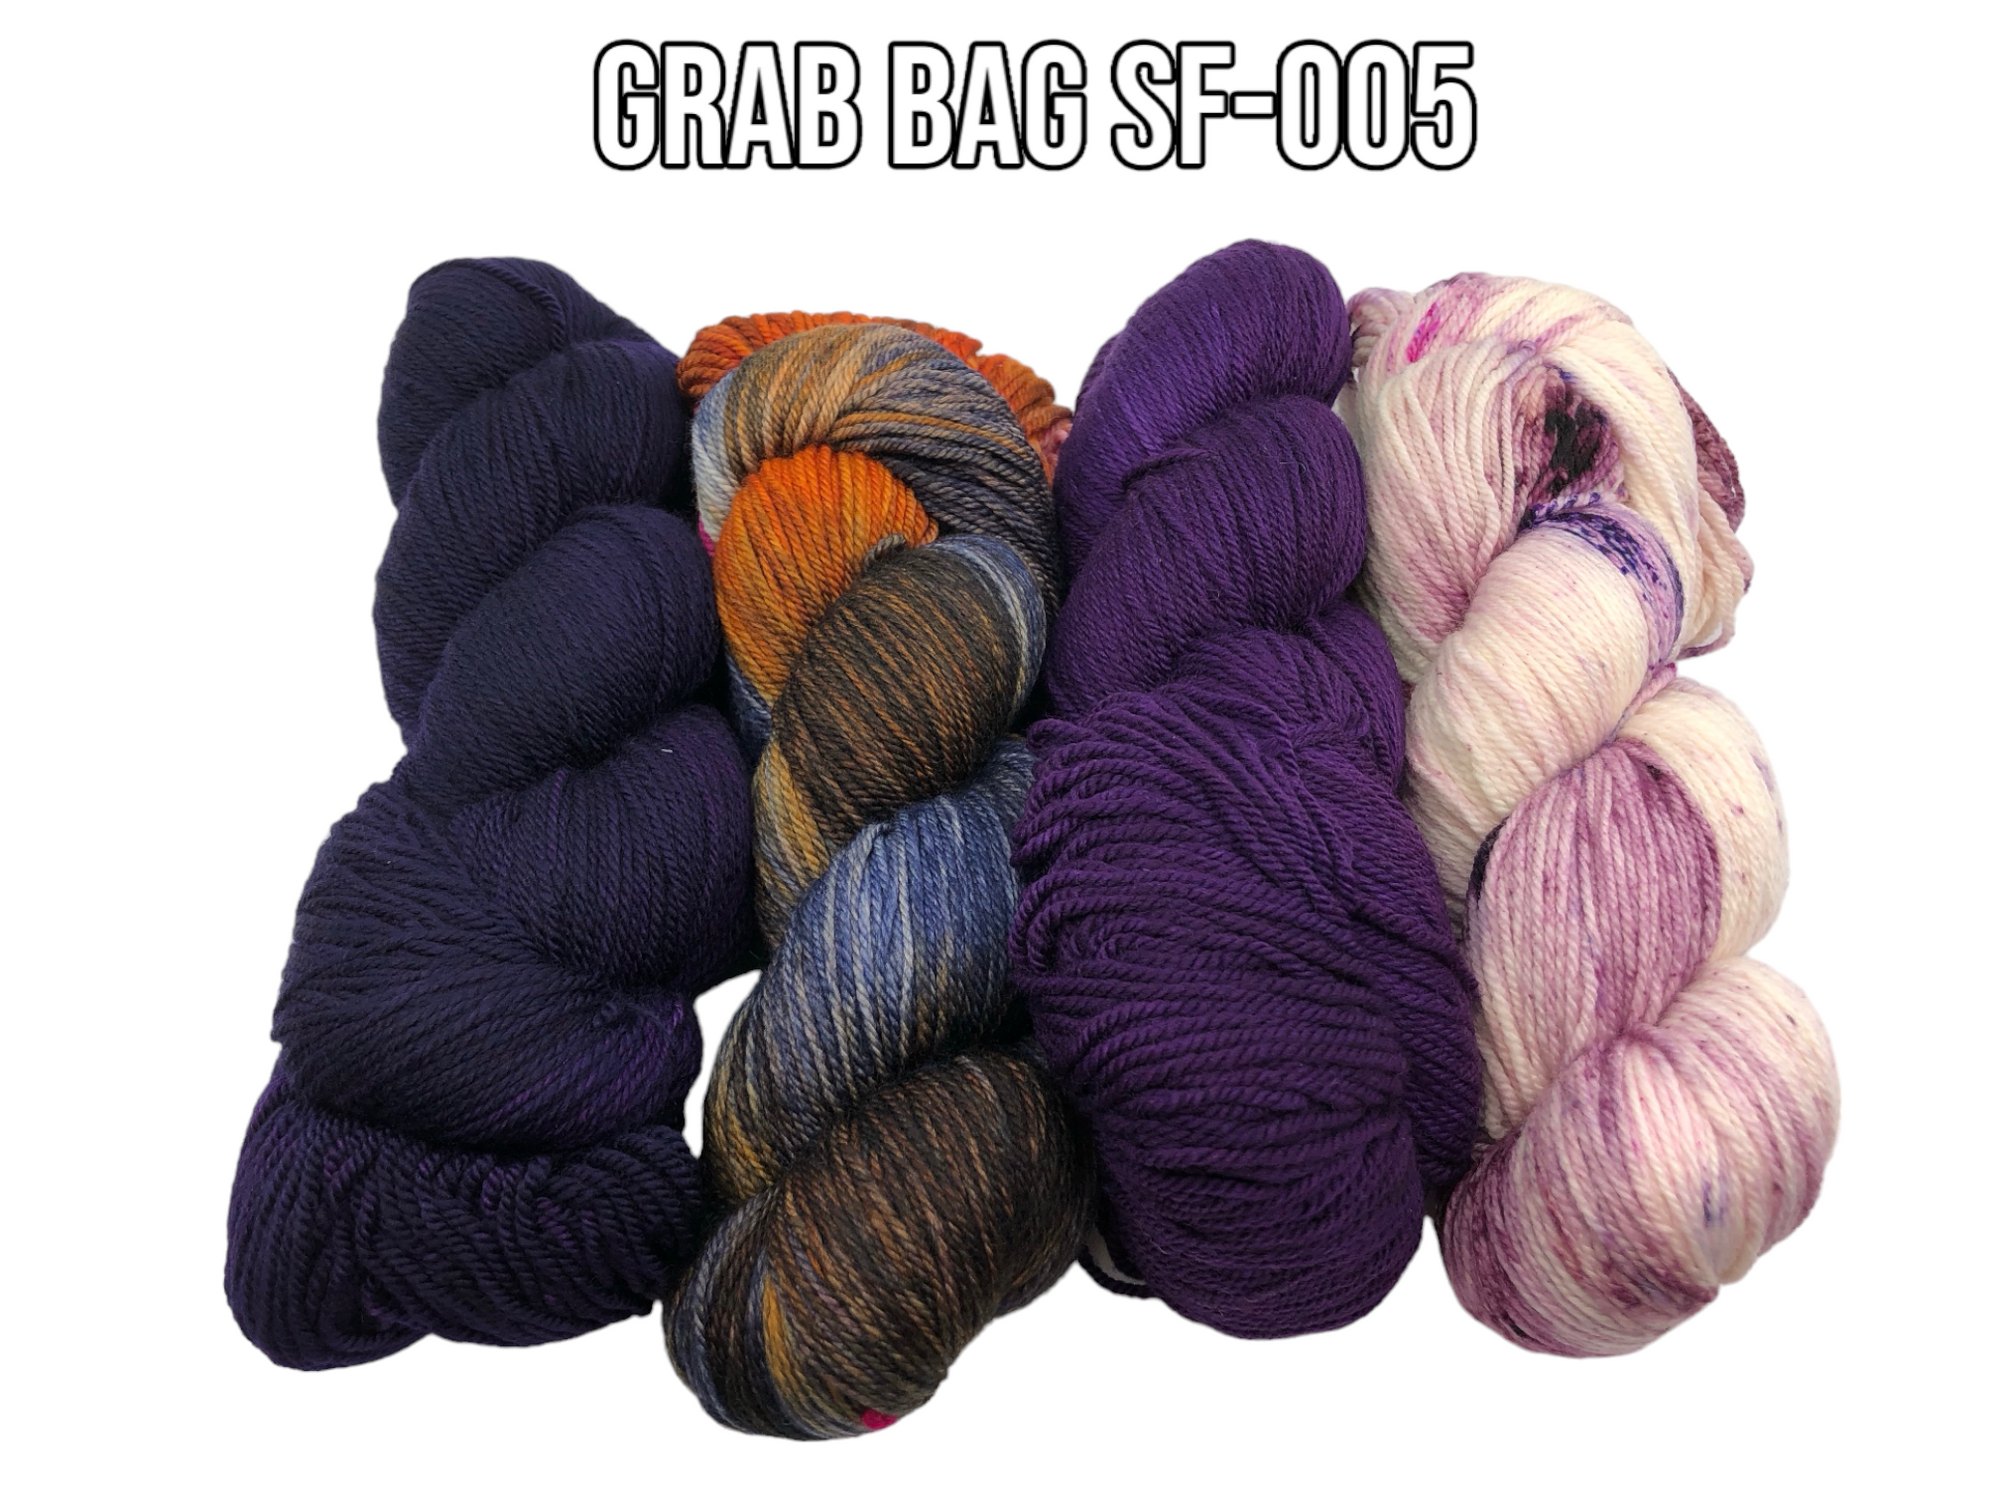 Grab Bag SF-005